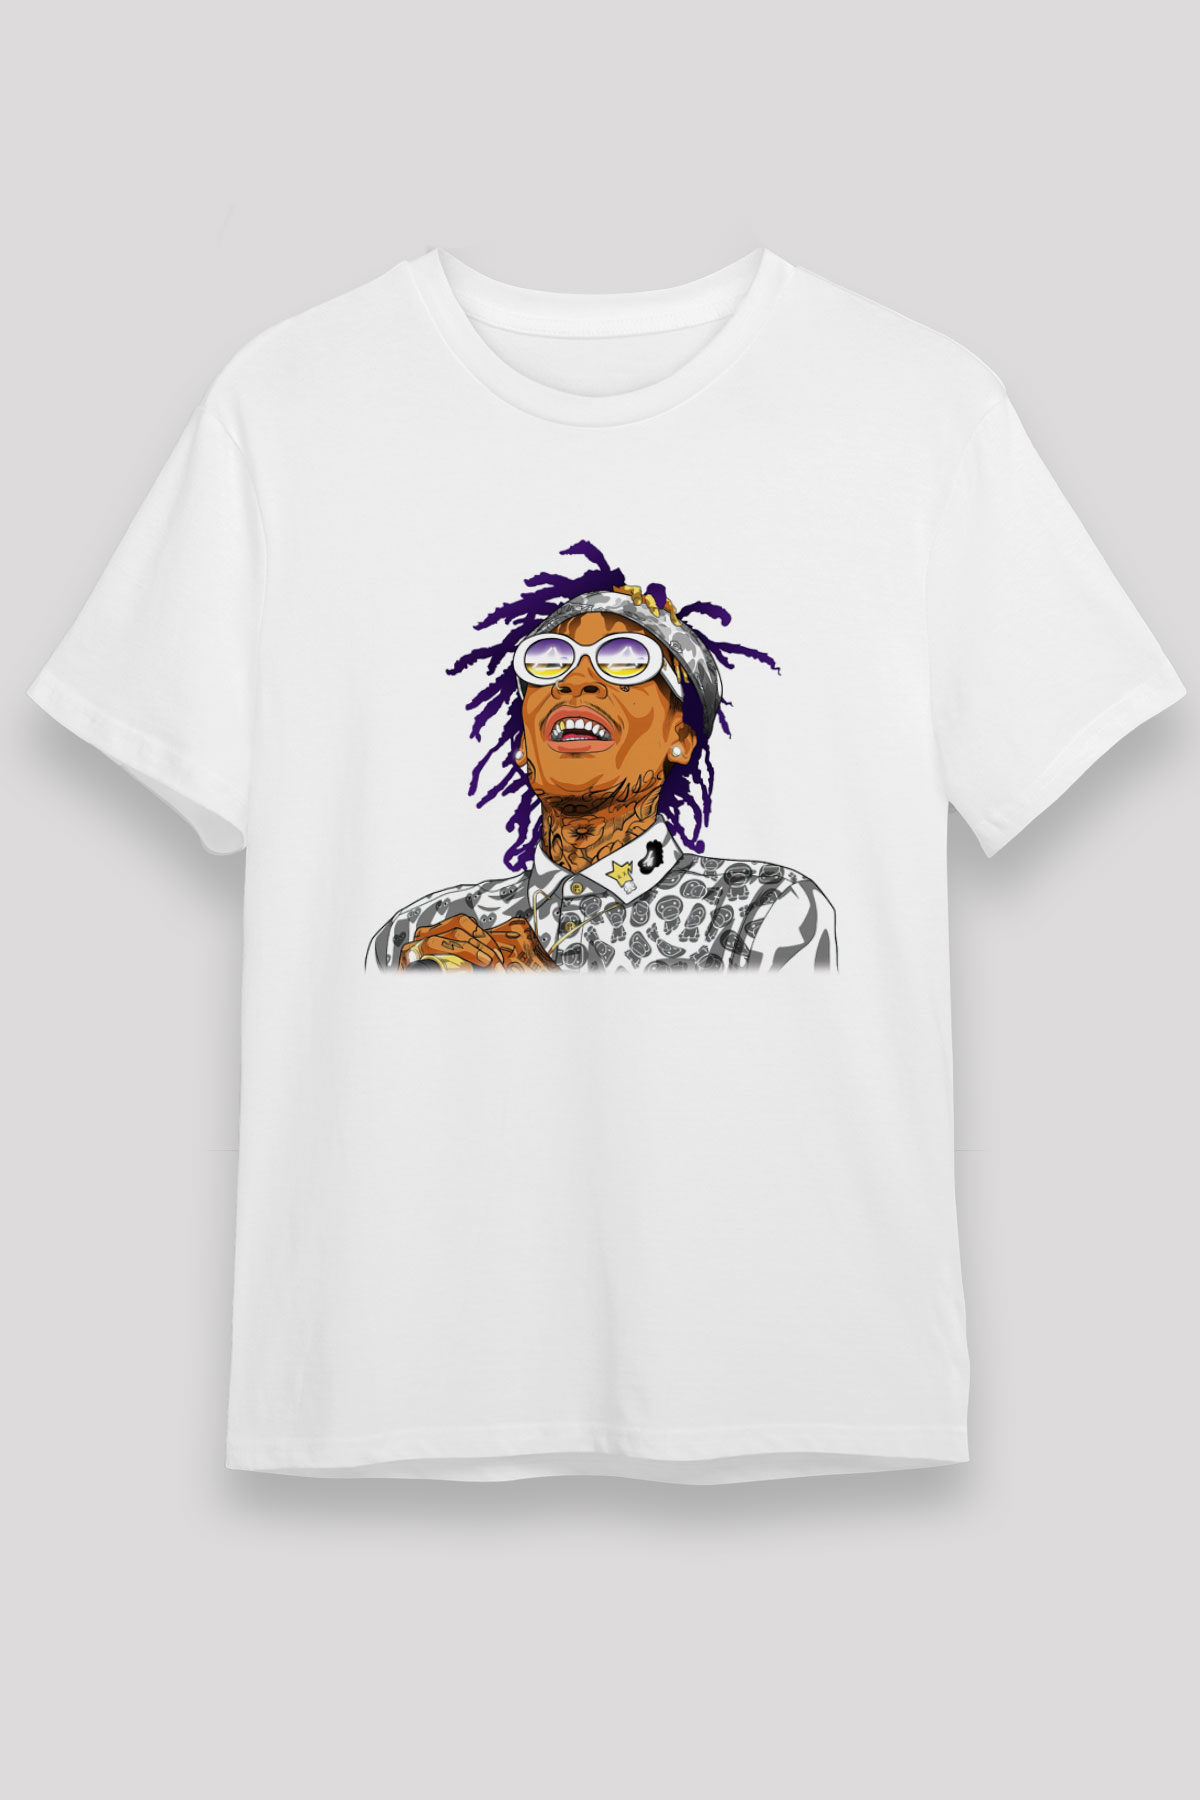 Wiz Khalifa T shirt,Hip Hop,Rap Tshirt 11/